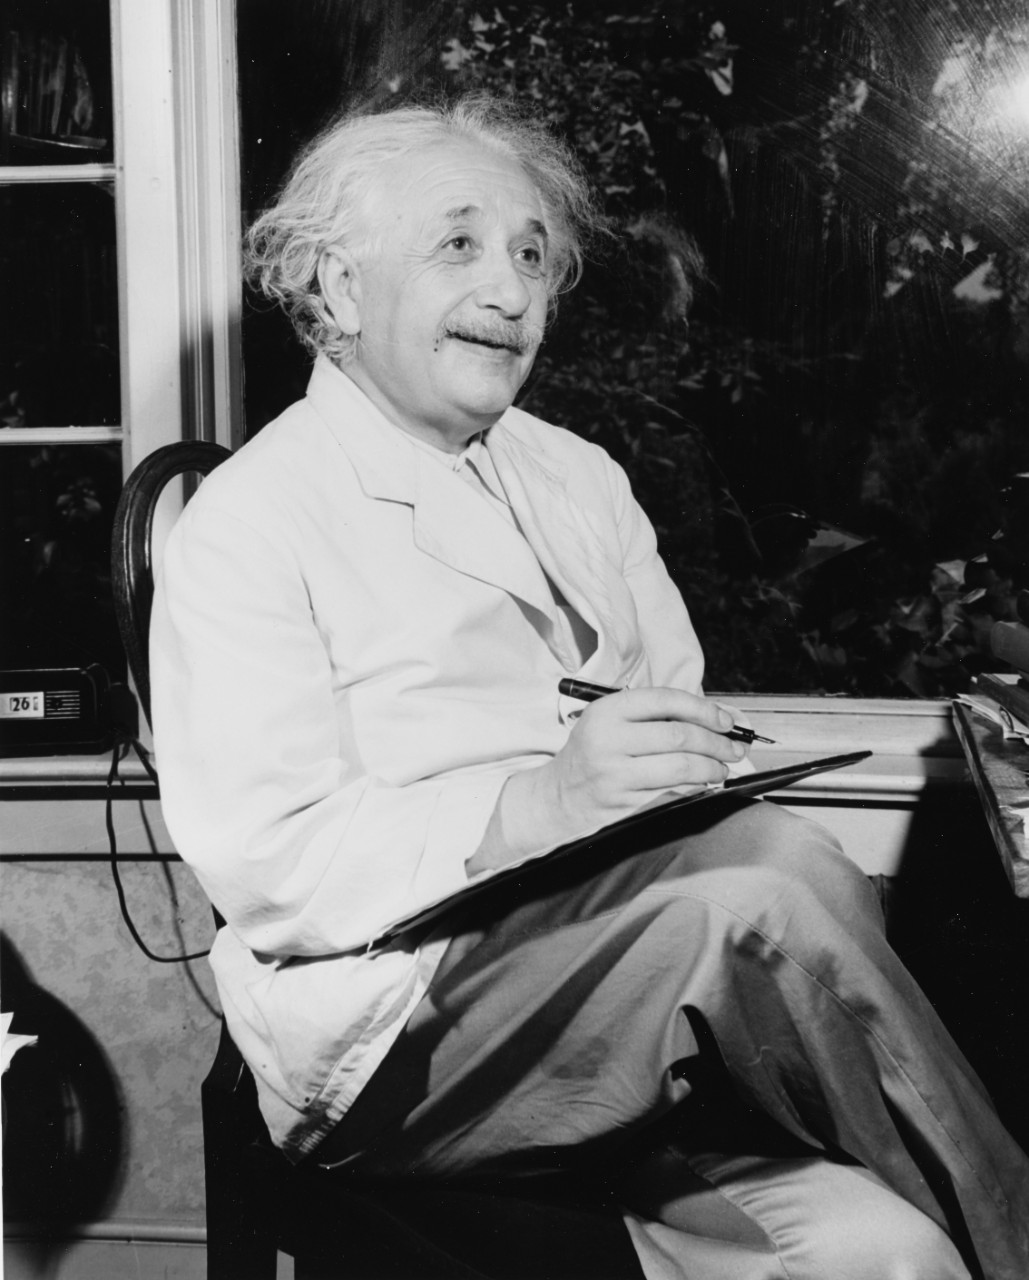 Photo #: 80-G-42917  Dr. Albert Einstein